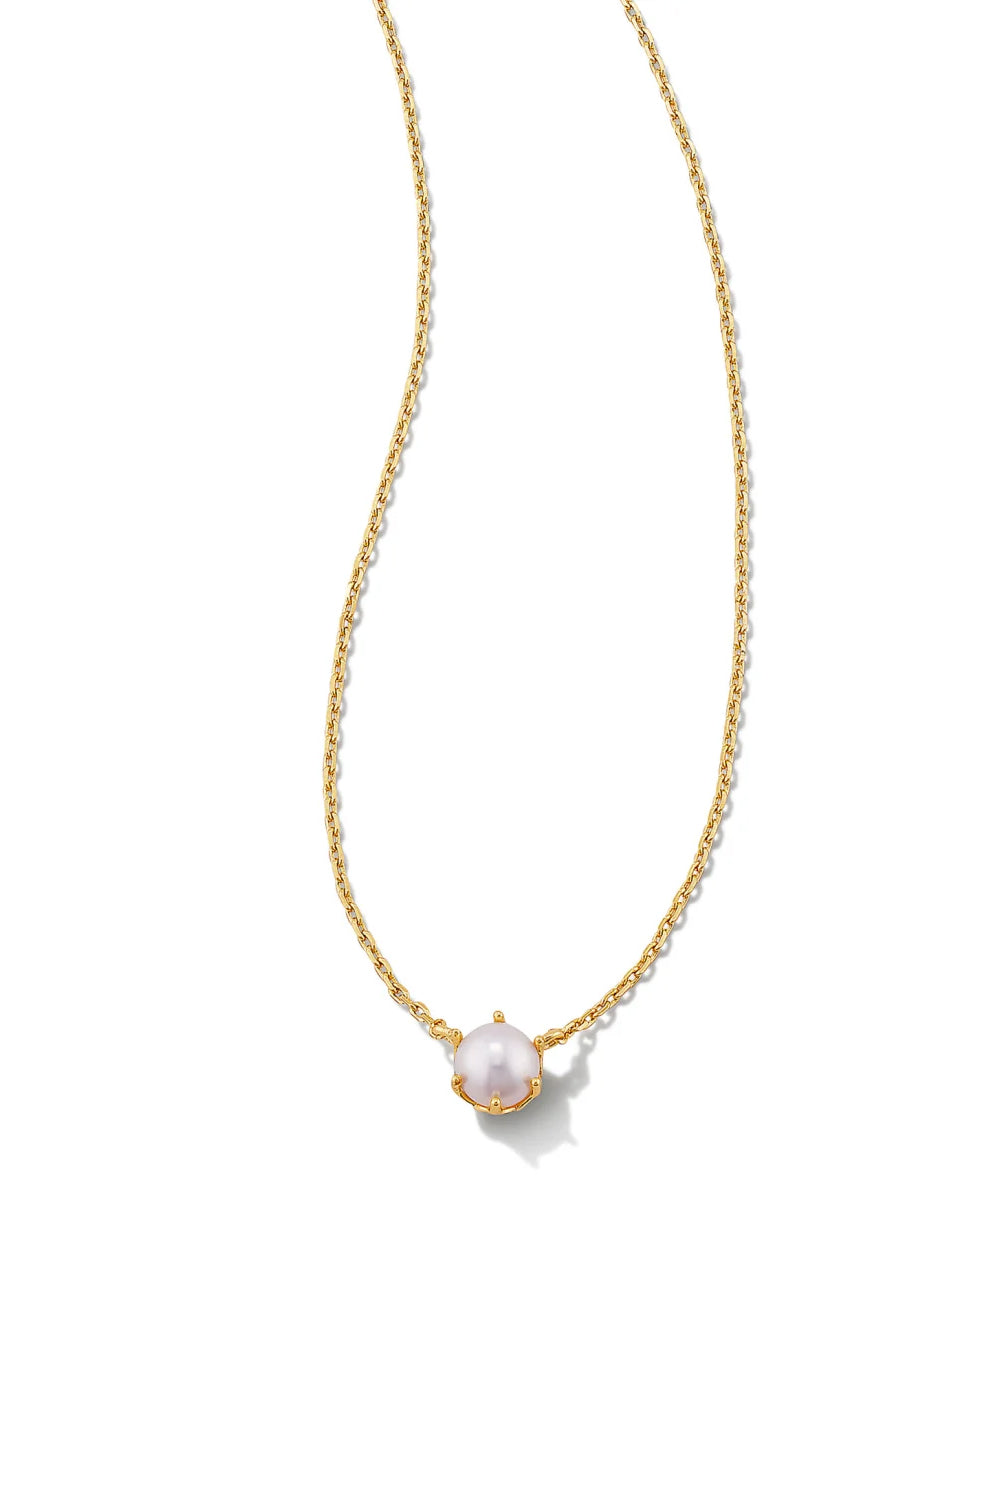 Kendra Scott: Ashton Gold Pendant Necklace - White Pearl | Makk Fashions